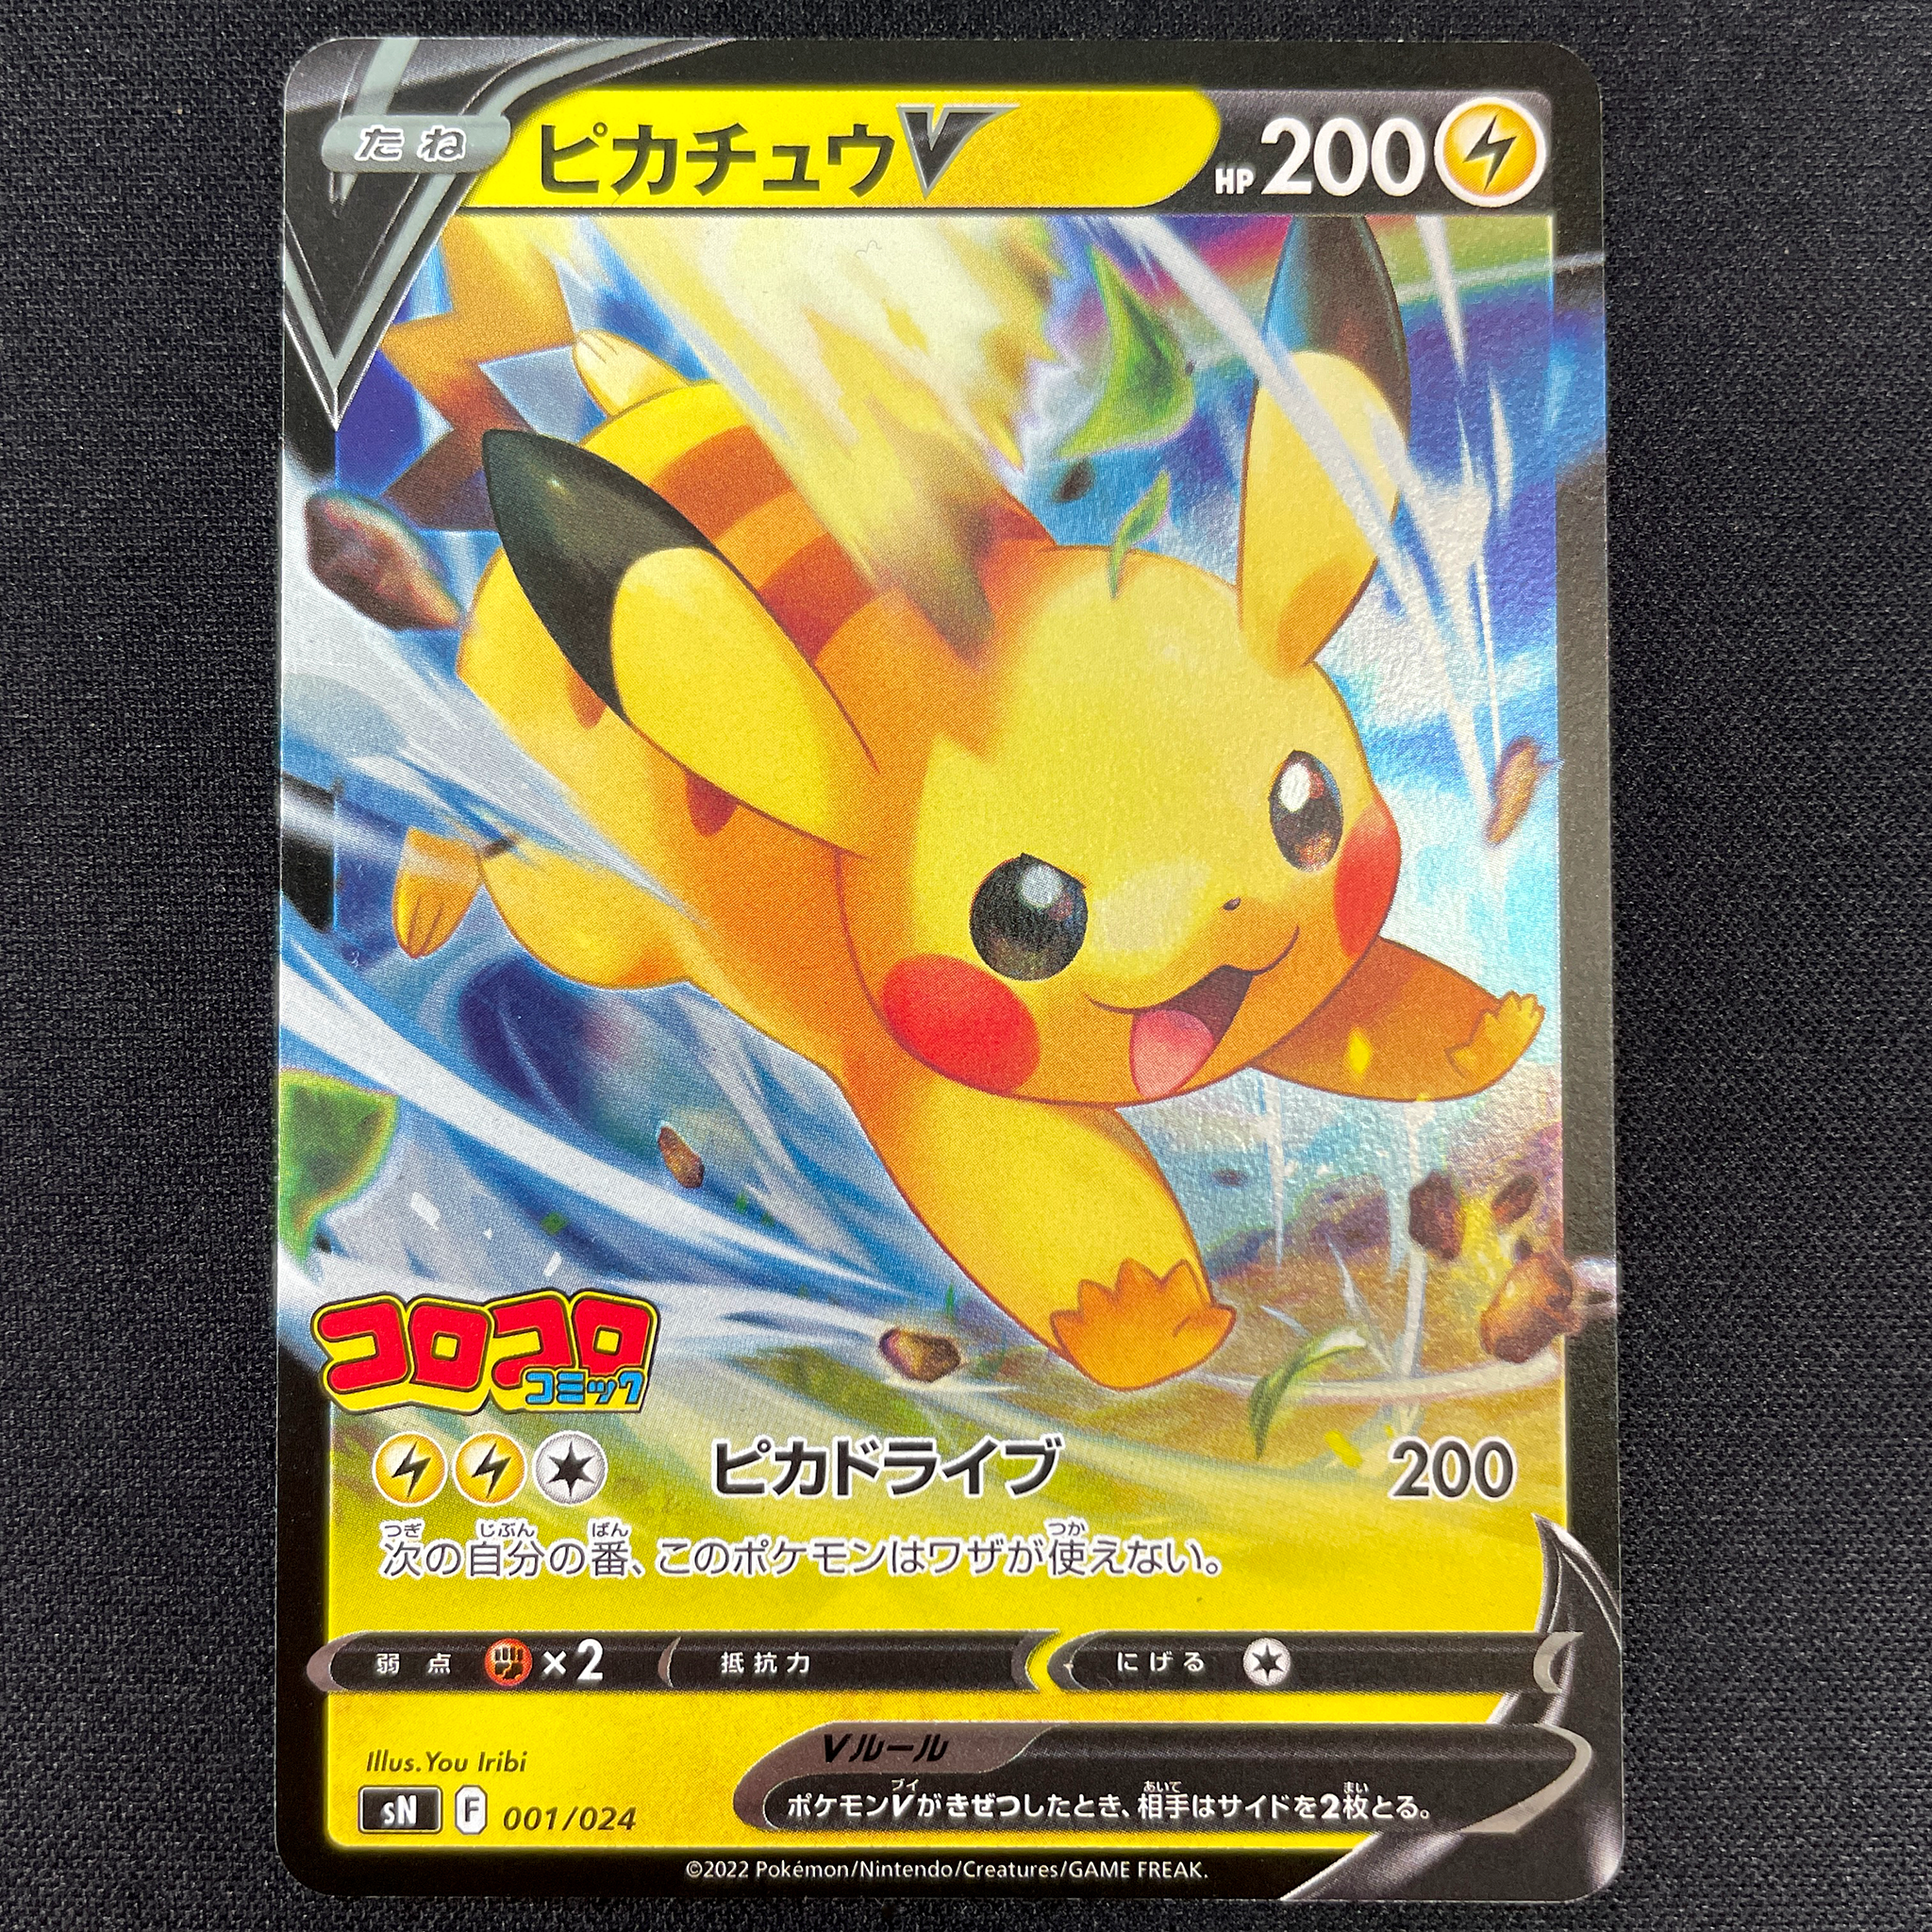 Pokémon Card Game PROMO sN 001/024